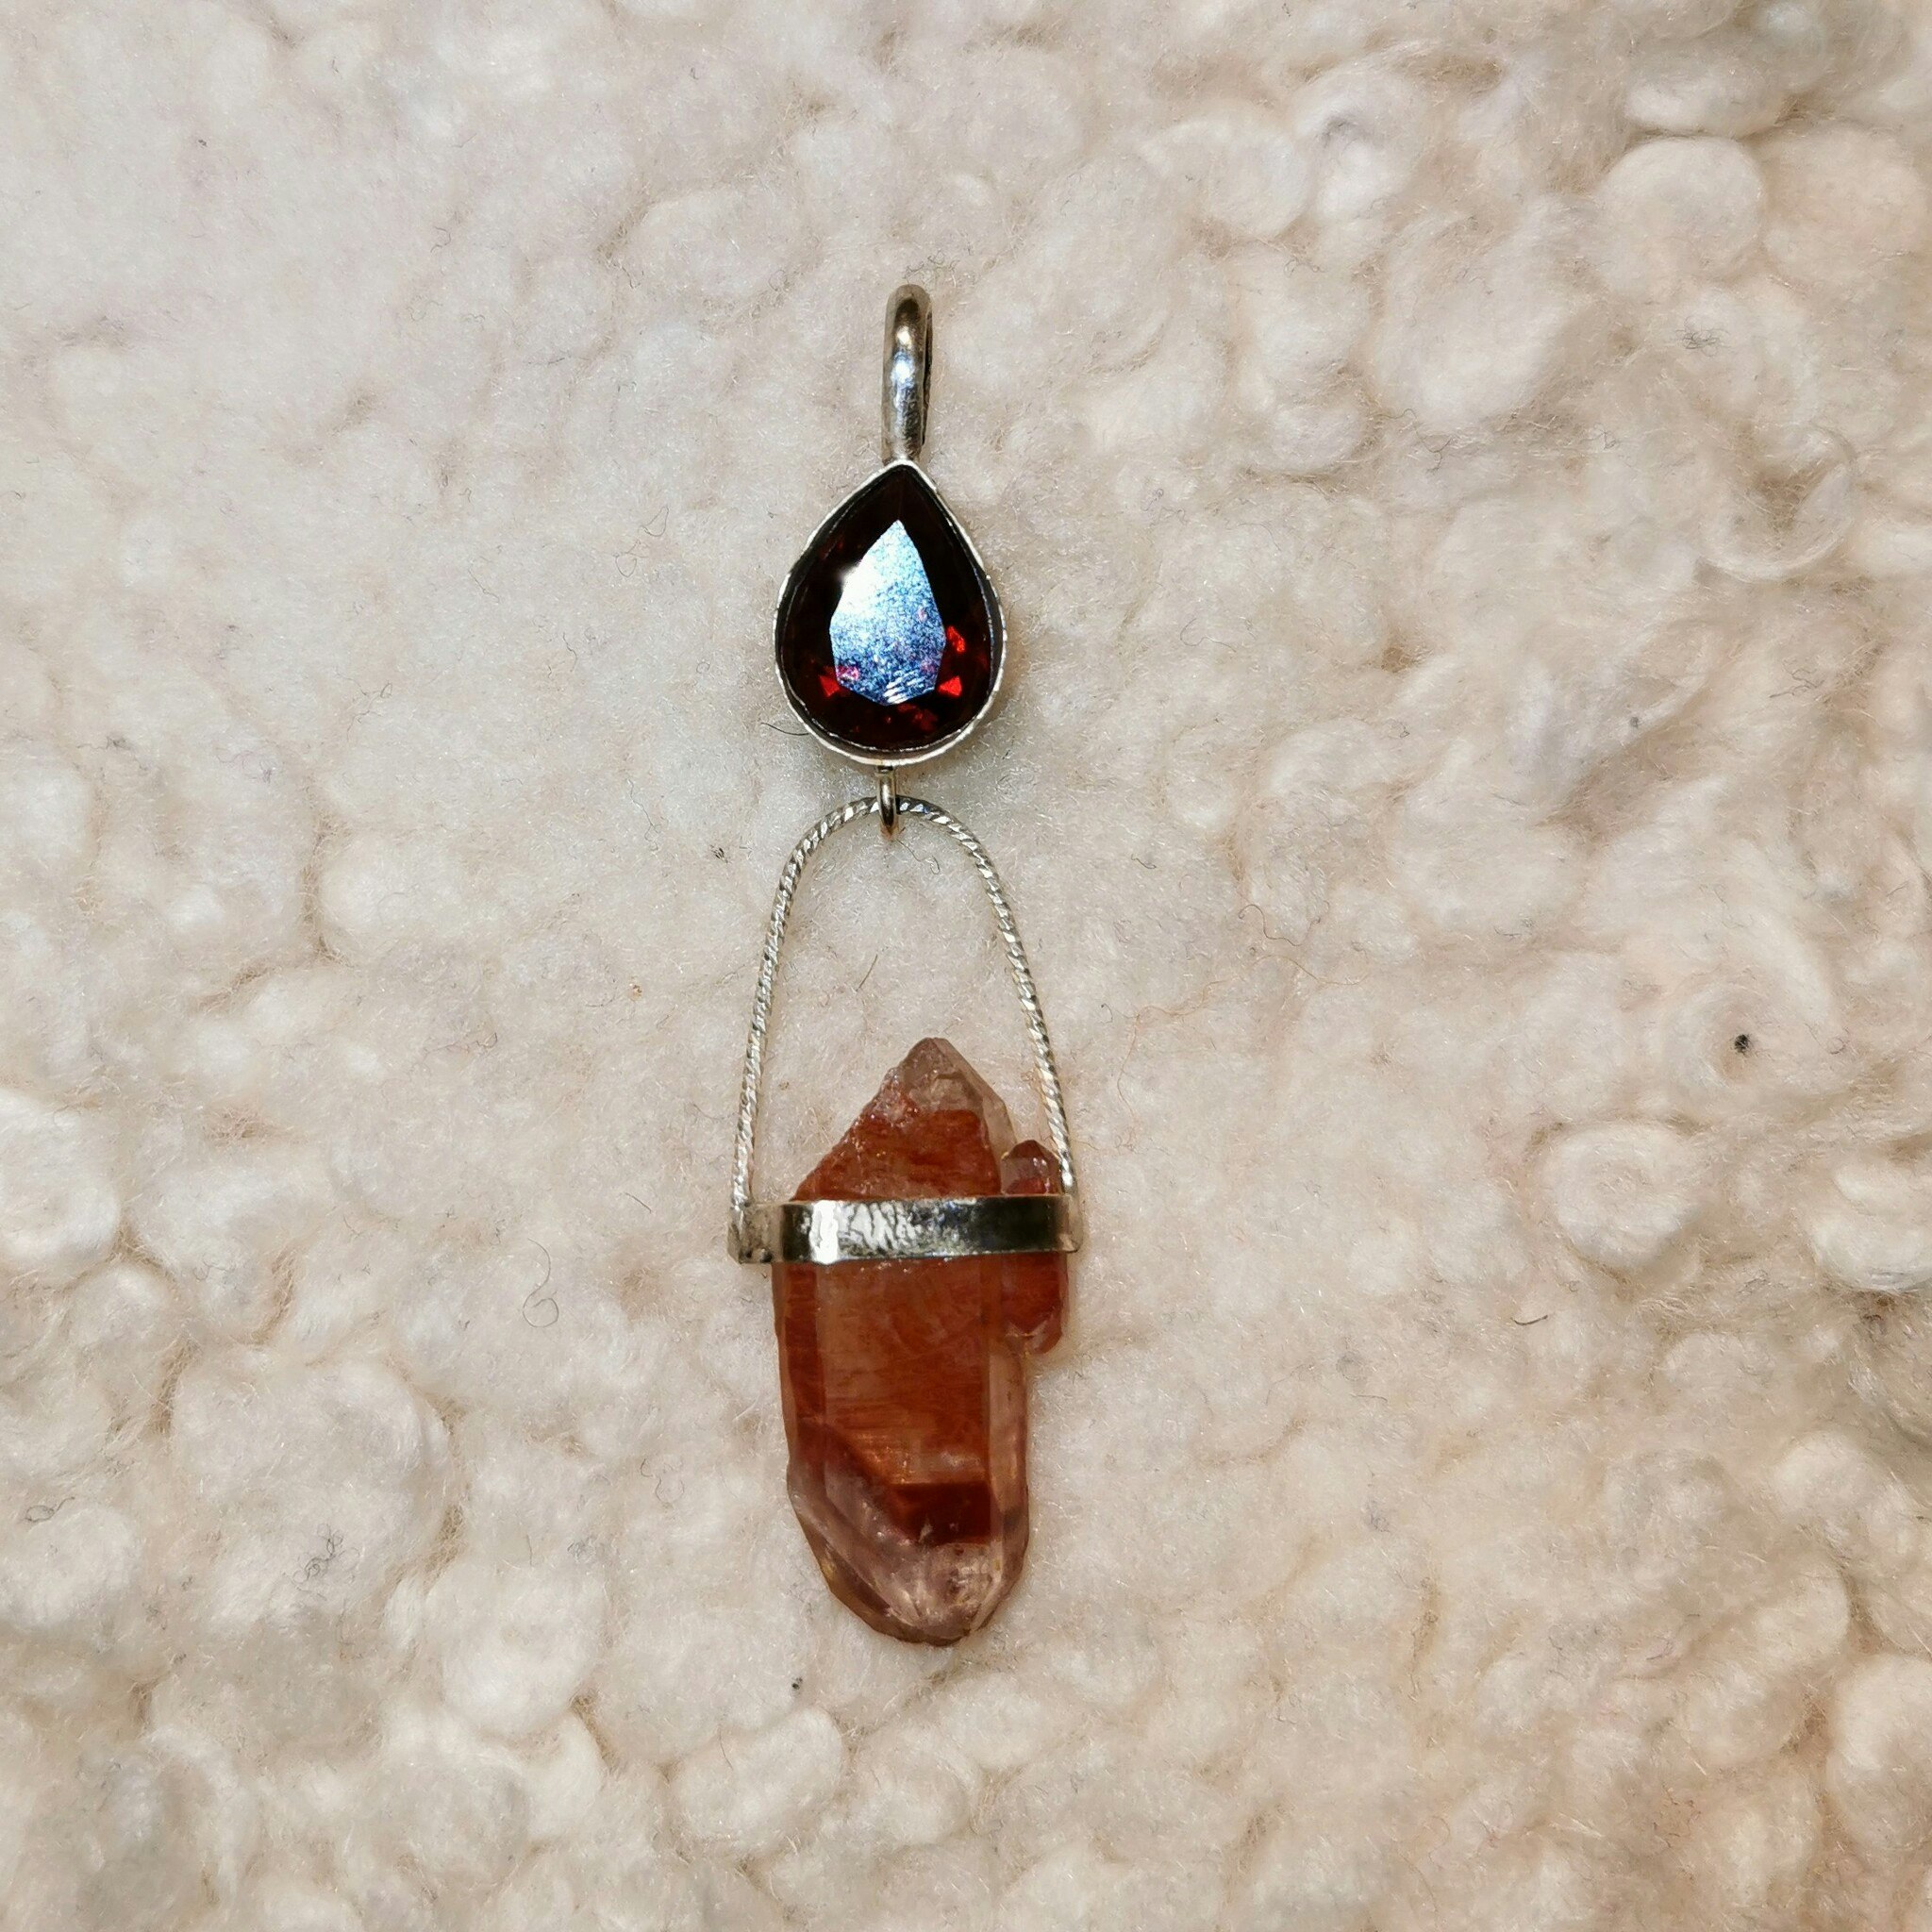 Blodröd granat med dubbelterminerad unik bergkristall